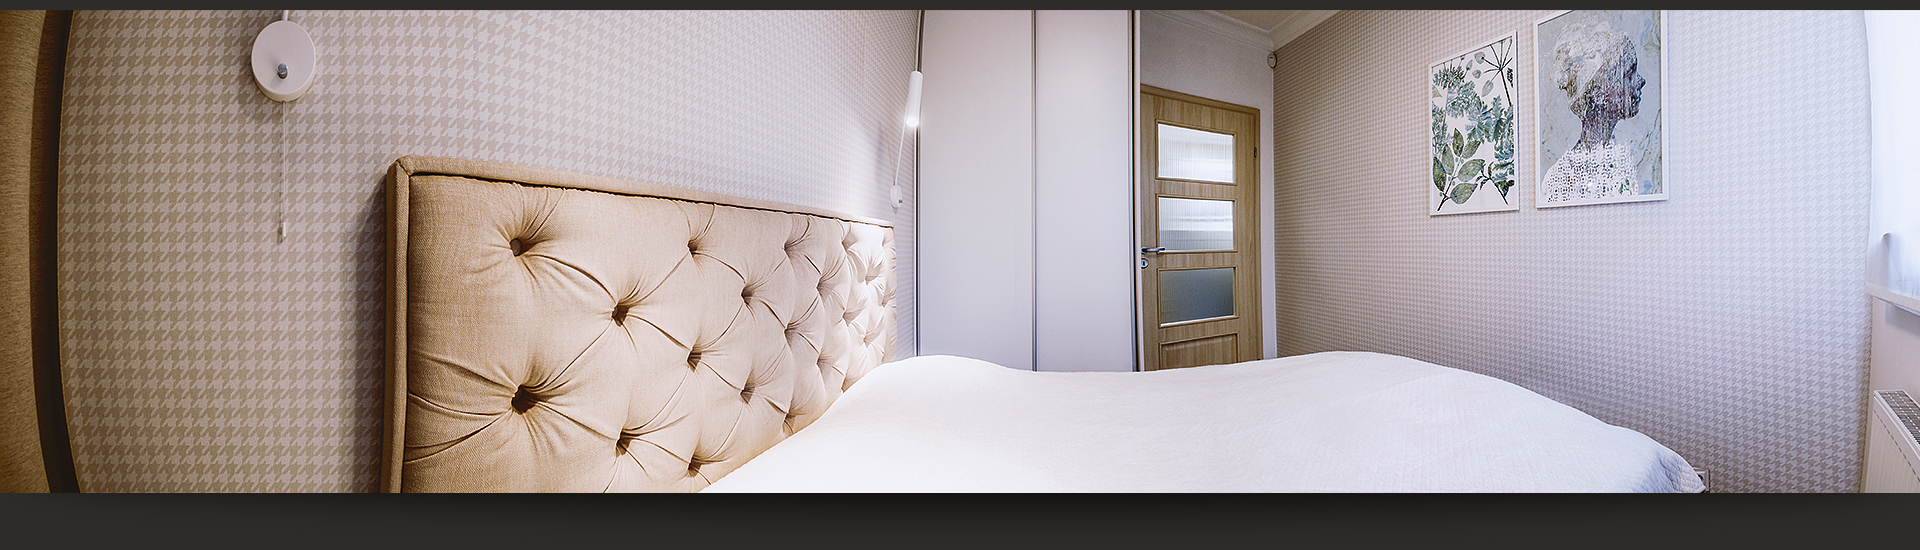 Dzięki zastosowaniu jasnych barw, sypialnia – mimo małego okna – jest jasna.